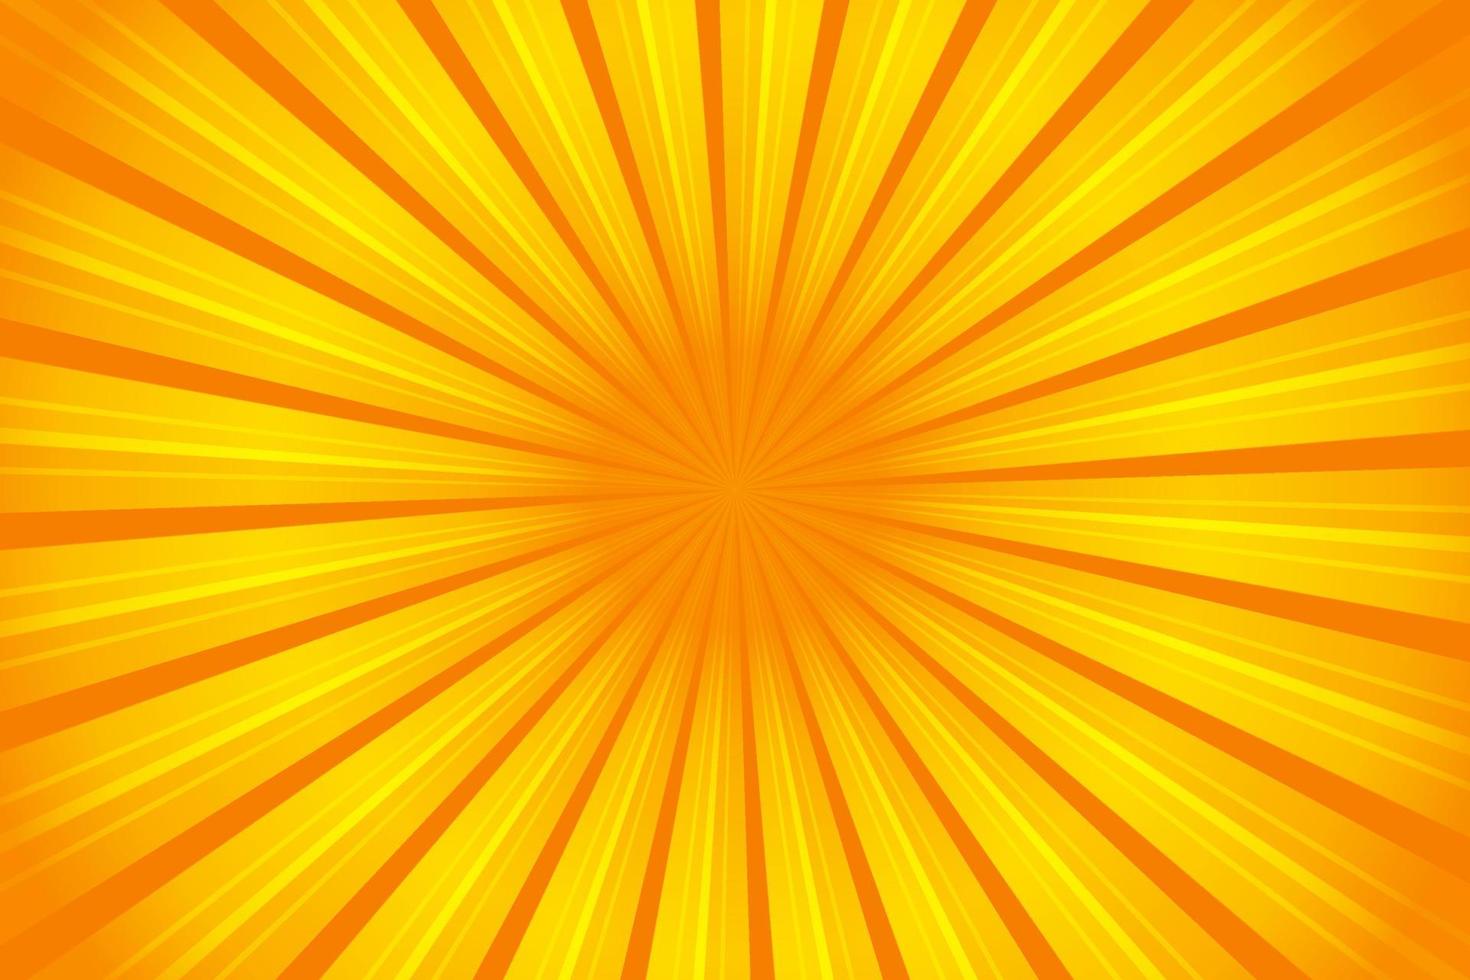 Sunburst yellow pattern rays summer background. Vector illustration